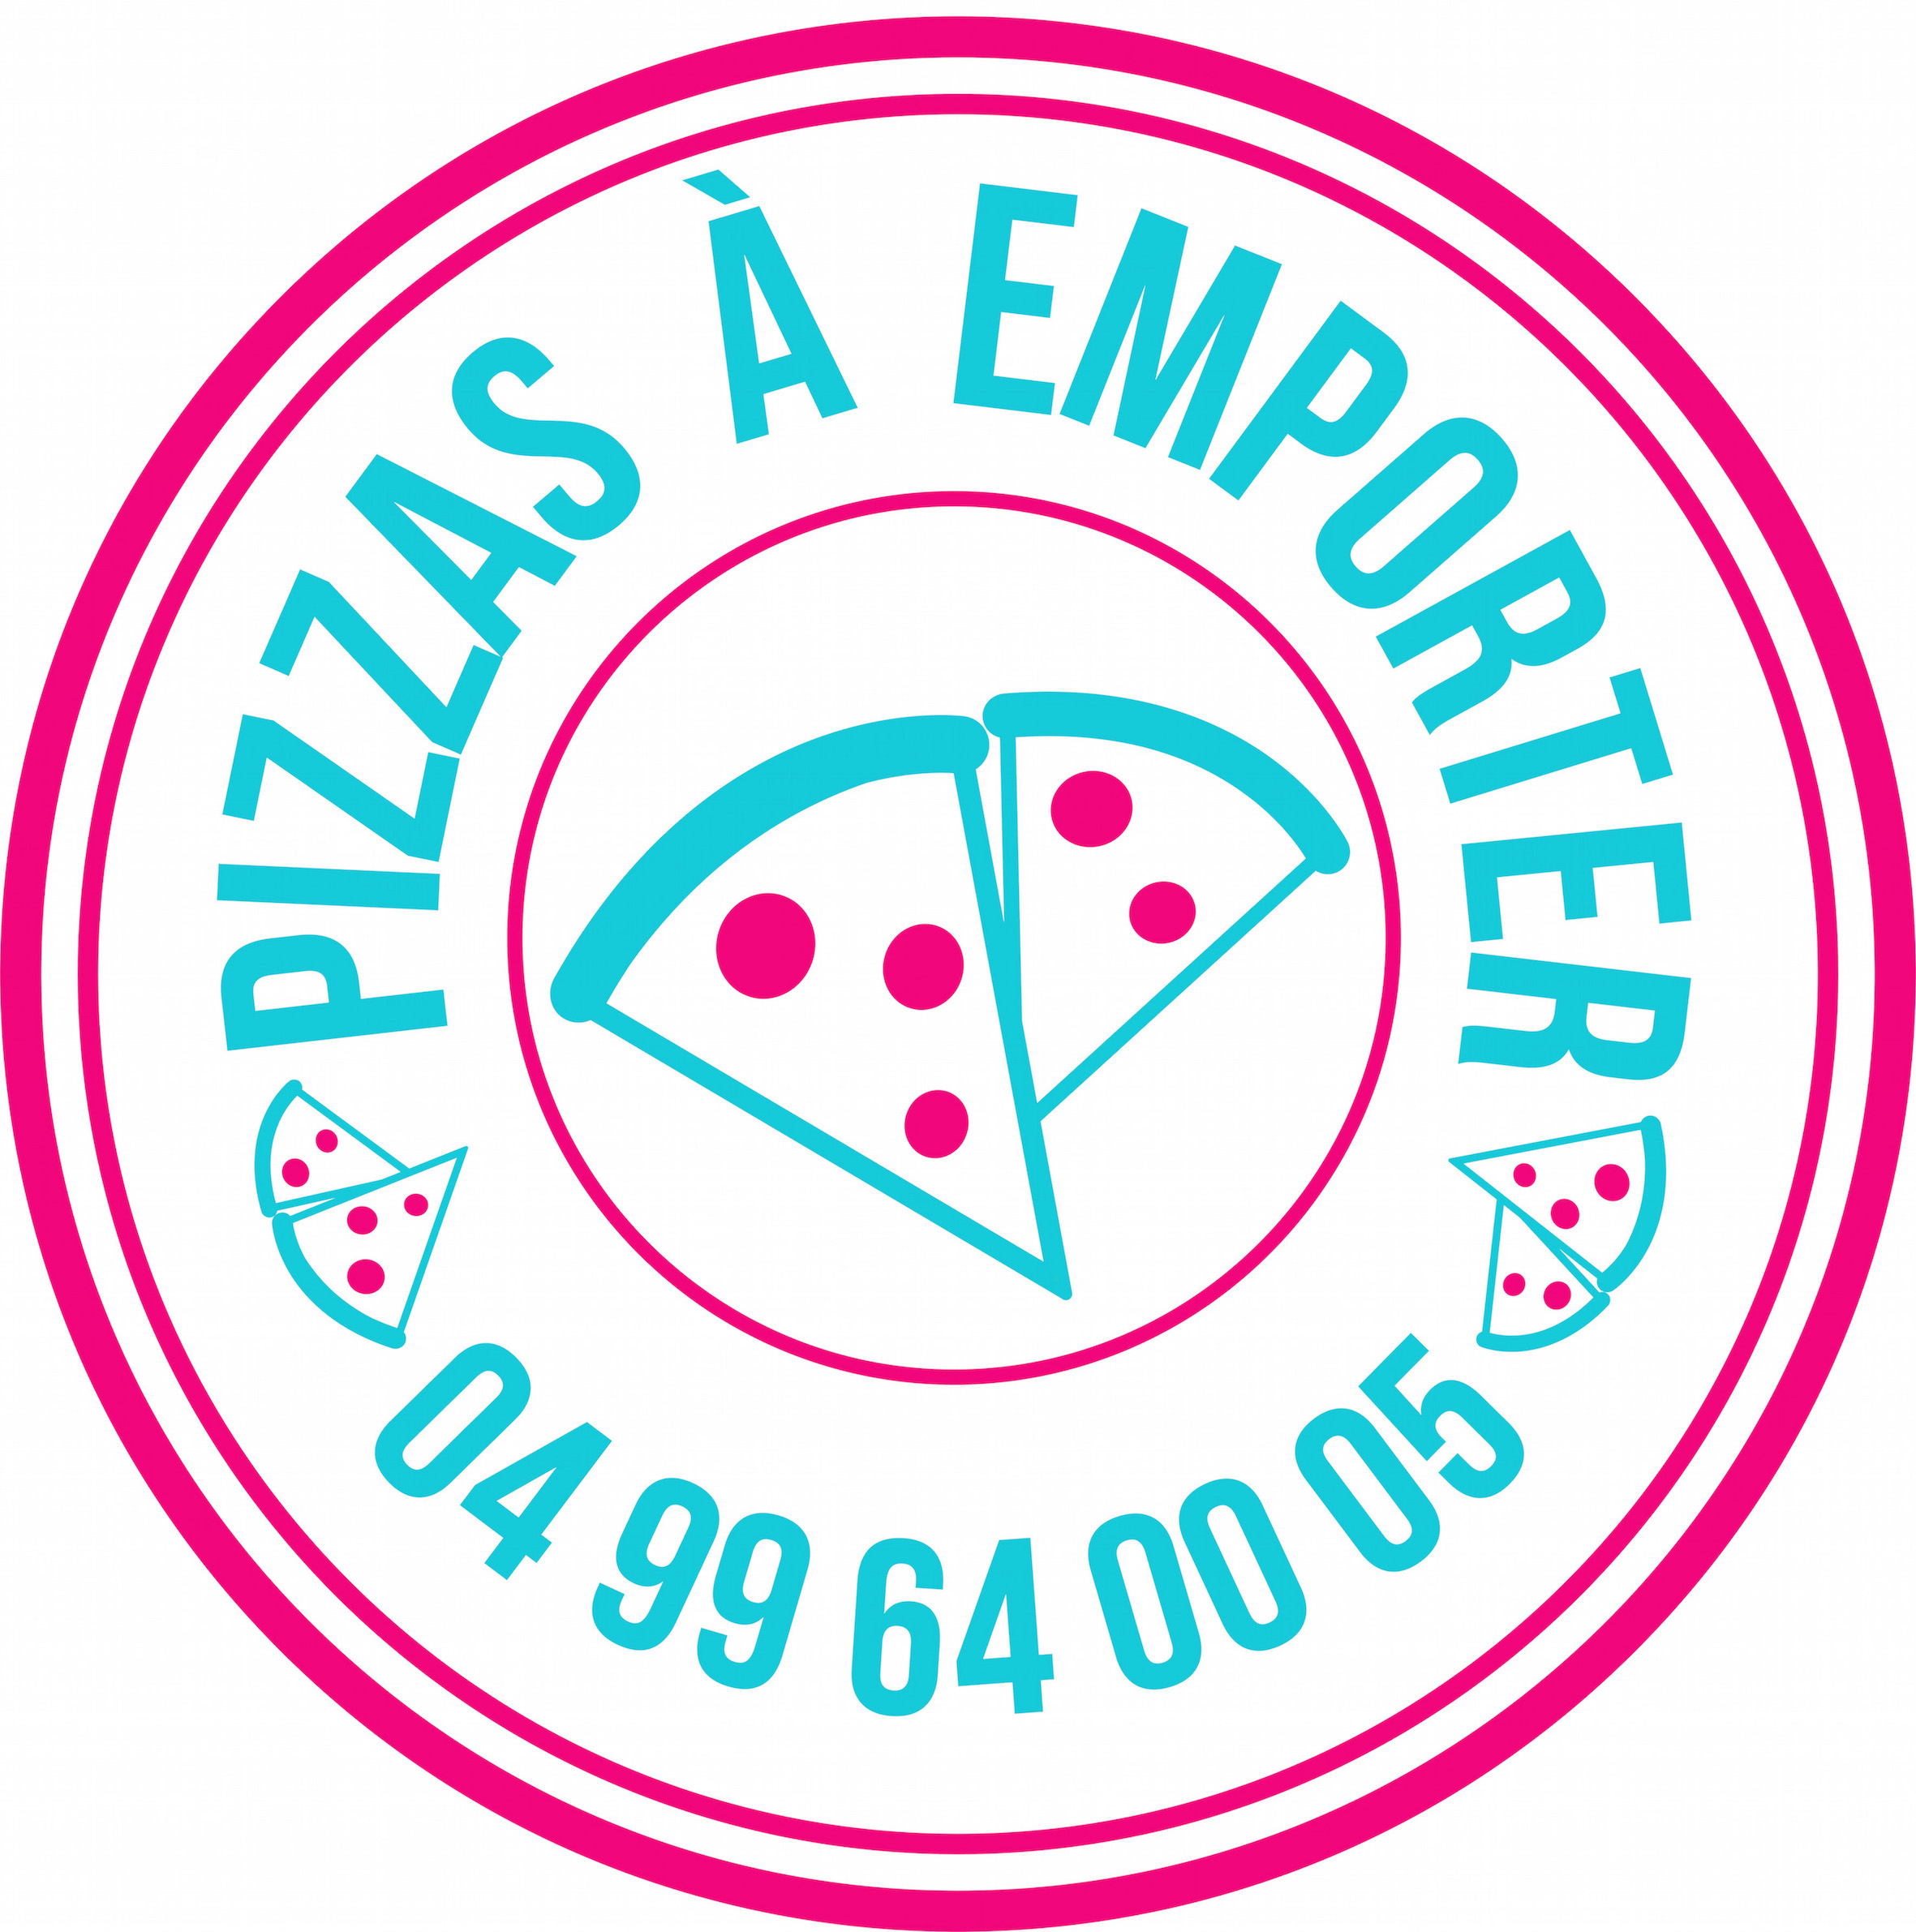 Commandez vos pizzas au 04 99 64 00 05 ou rendez-vous au 5, Avenue Pasteur 34190 GANGES